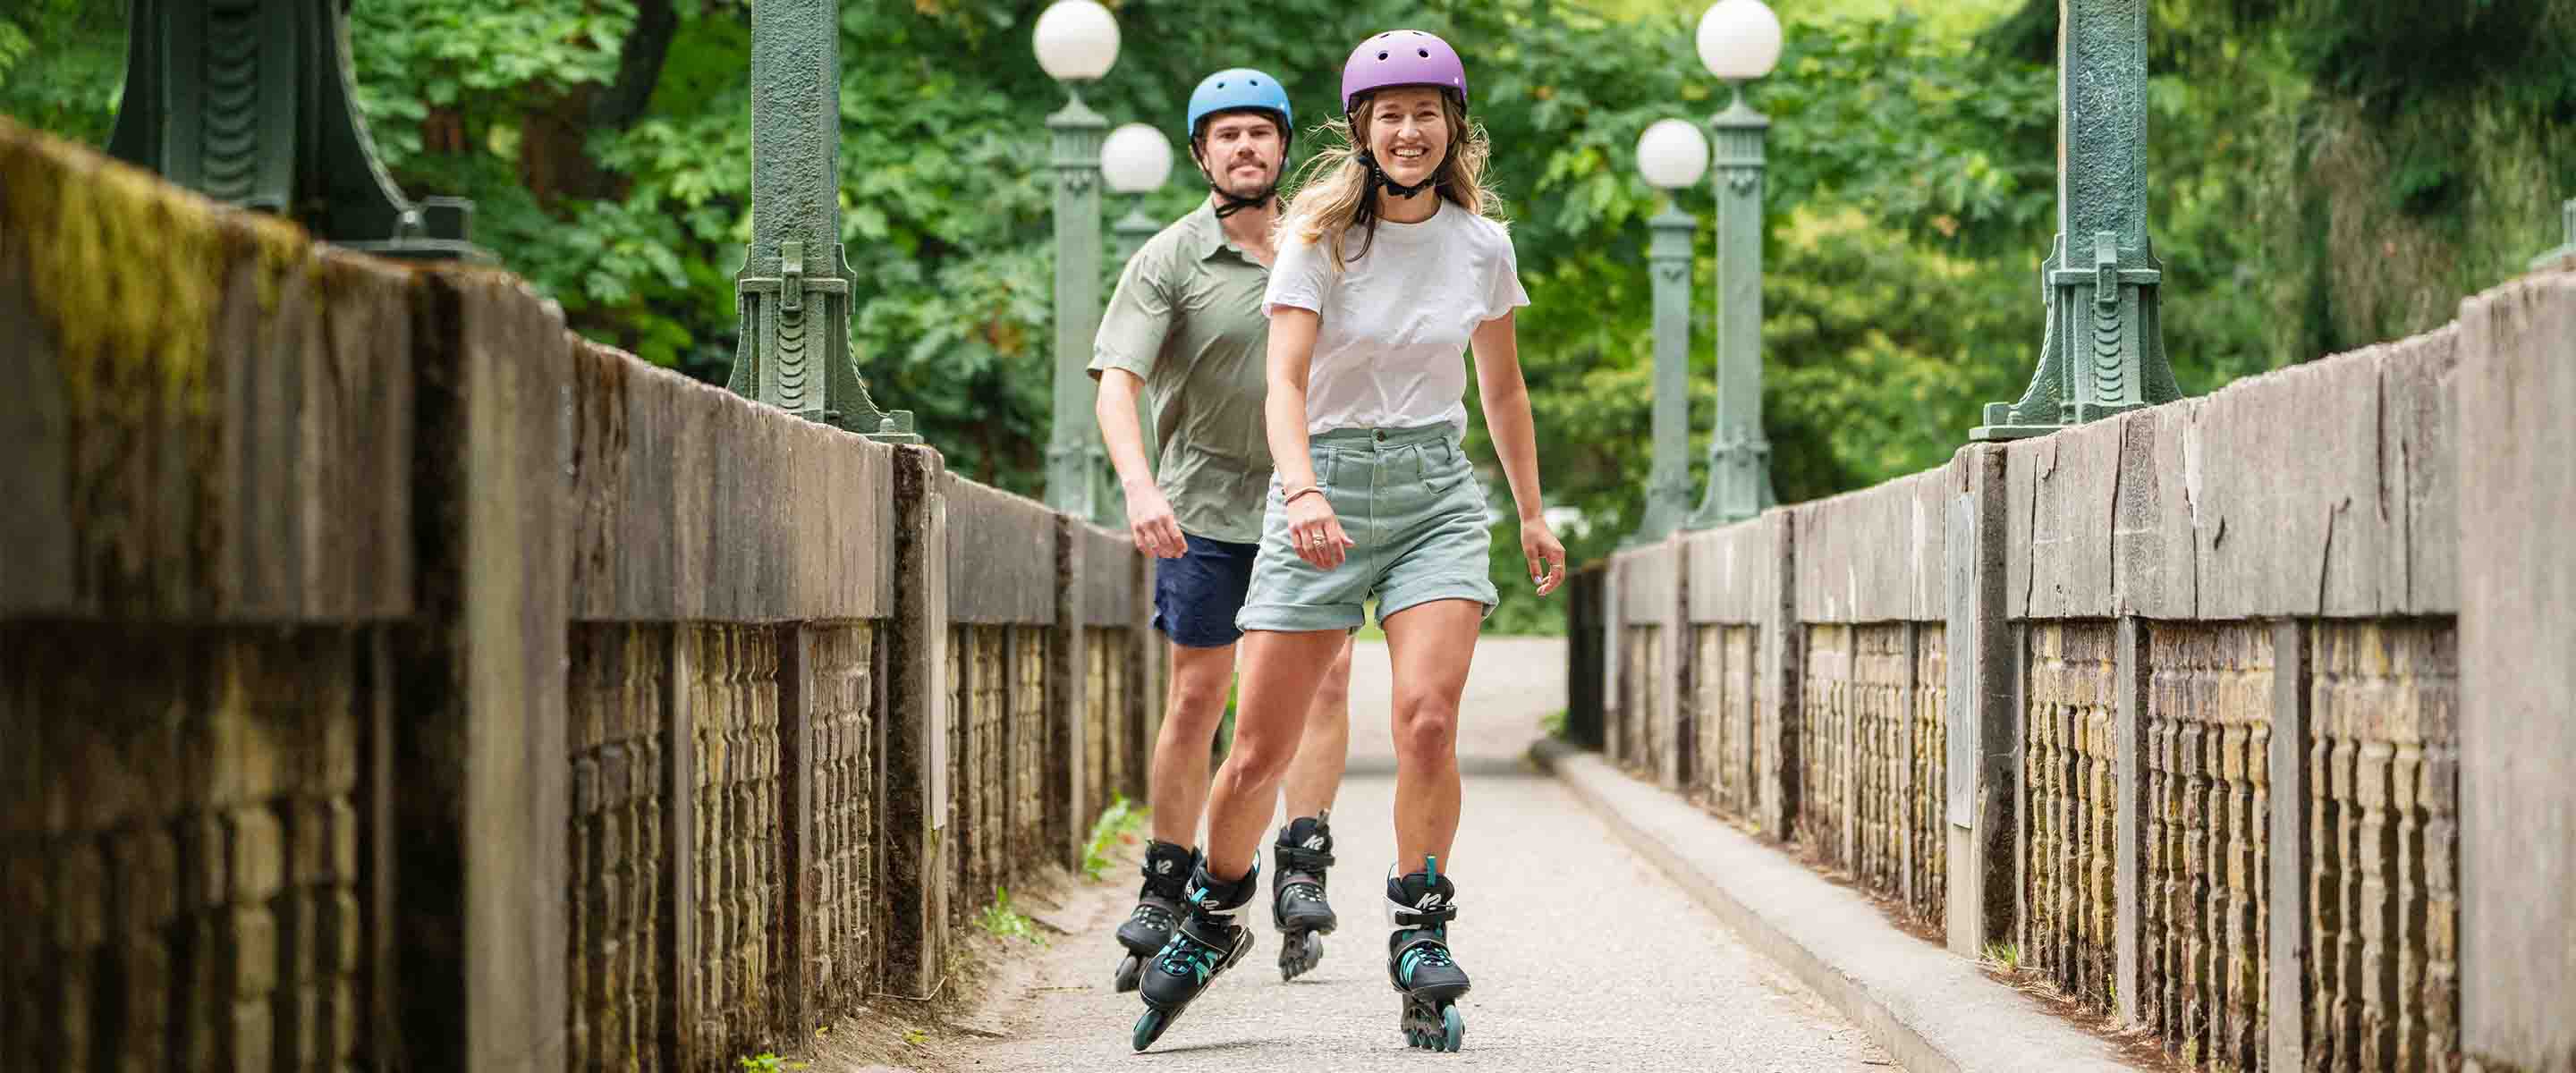 Accessoires de protection pour patins à roues alignées